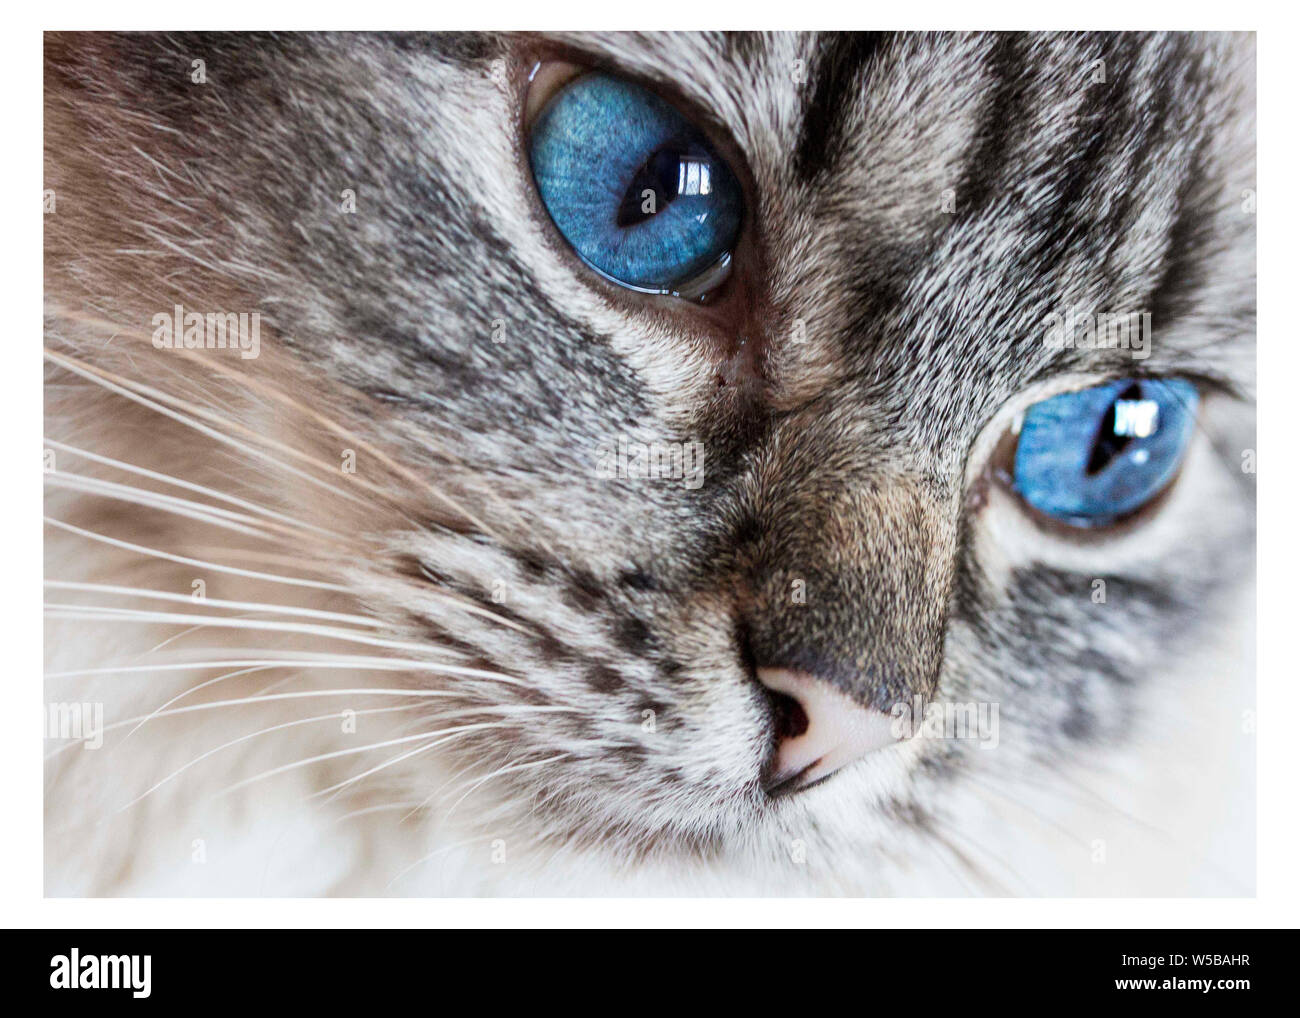 Close-up d'un arbre chat Ragdoll montrant son visage avec des yeux bleus intenses et motif tabby le visage avec un blanc manteau à poils longs Banque D'Images